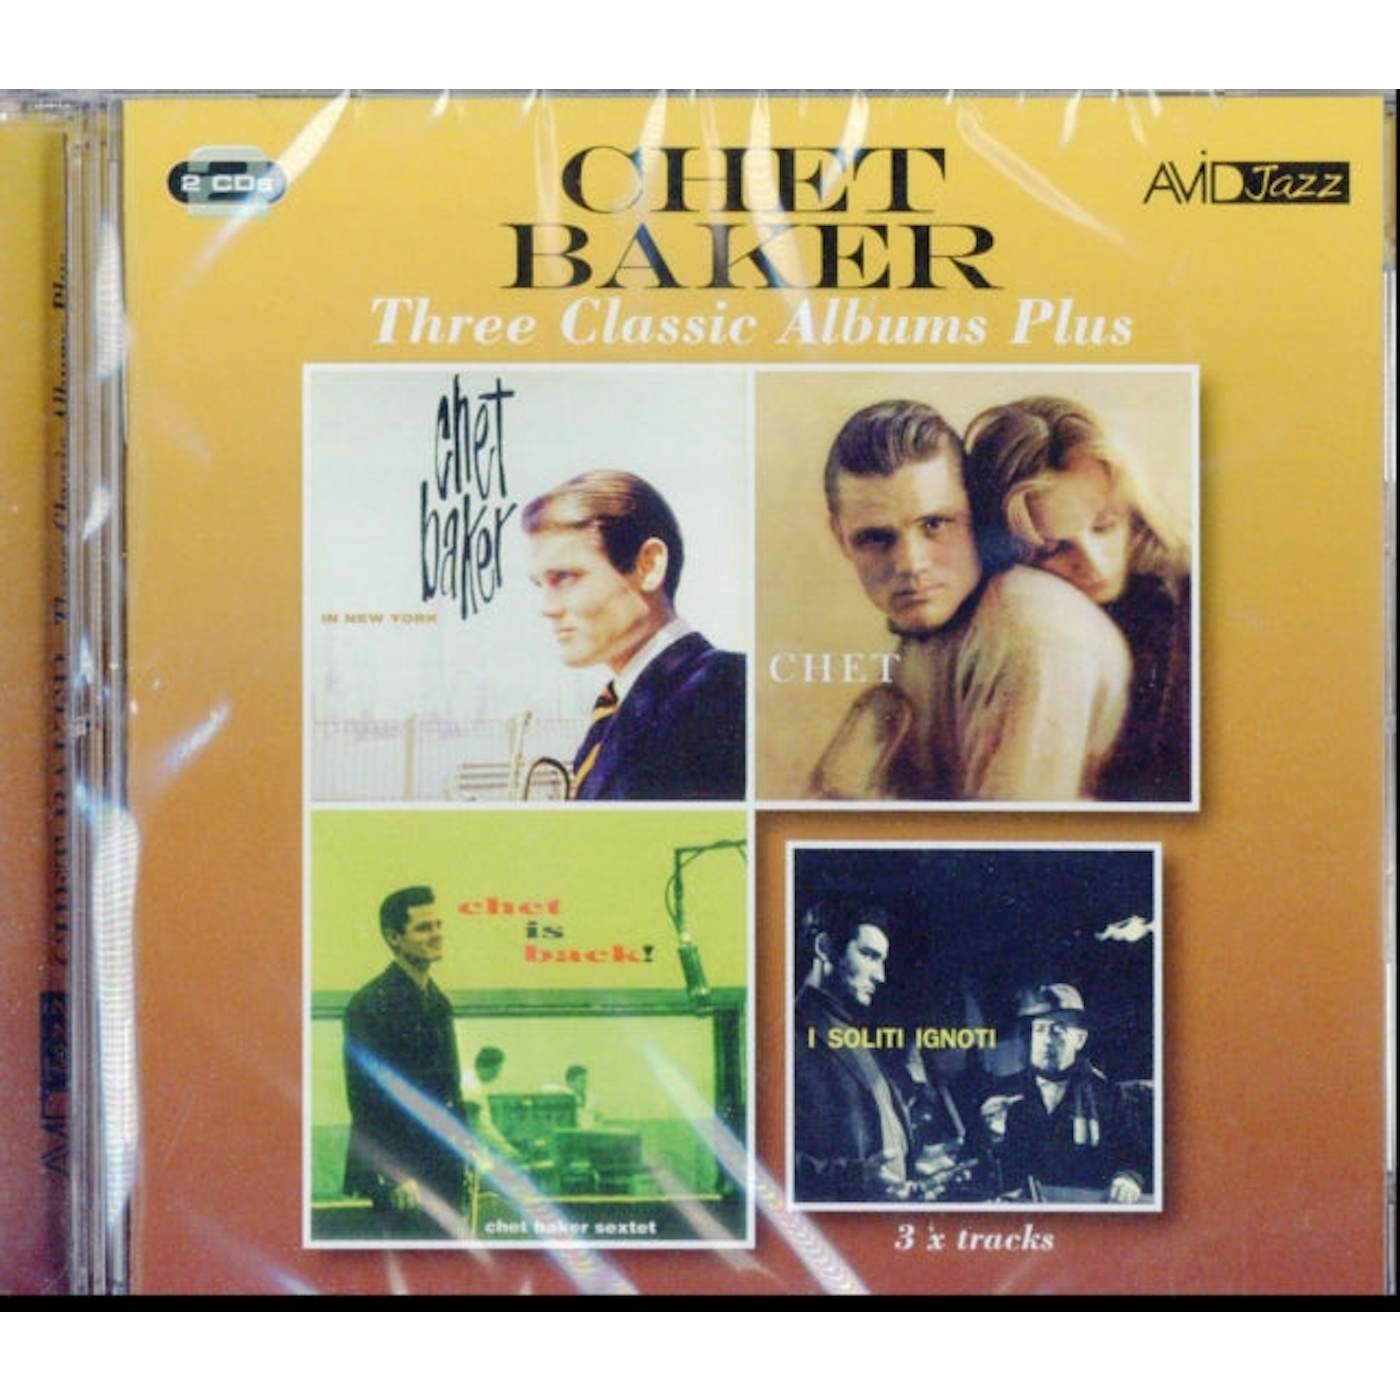 Chet Baker CD - Three Classic Albums Plus (In New York / Chet / Chet Is Back)